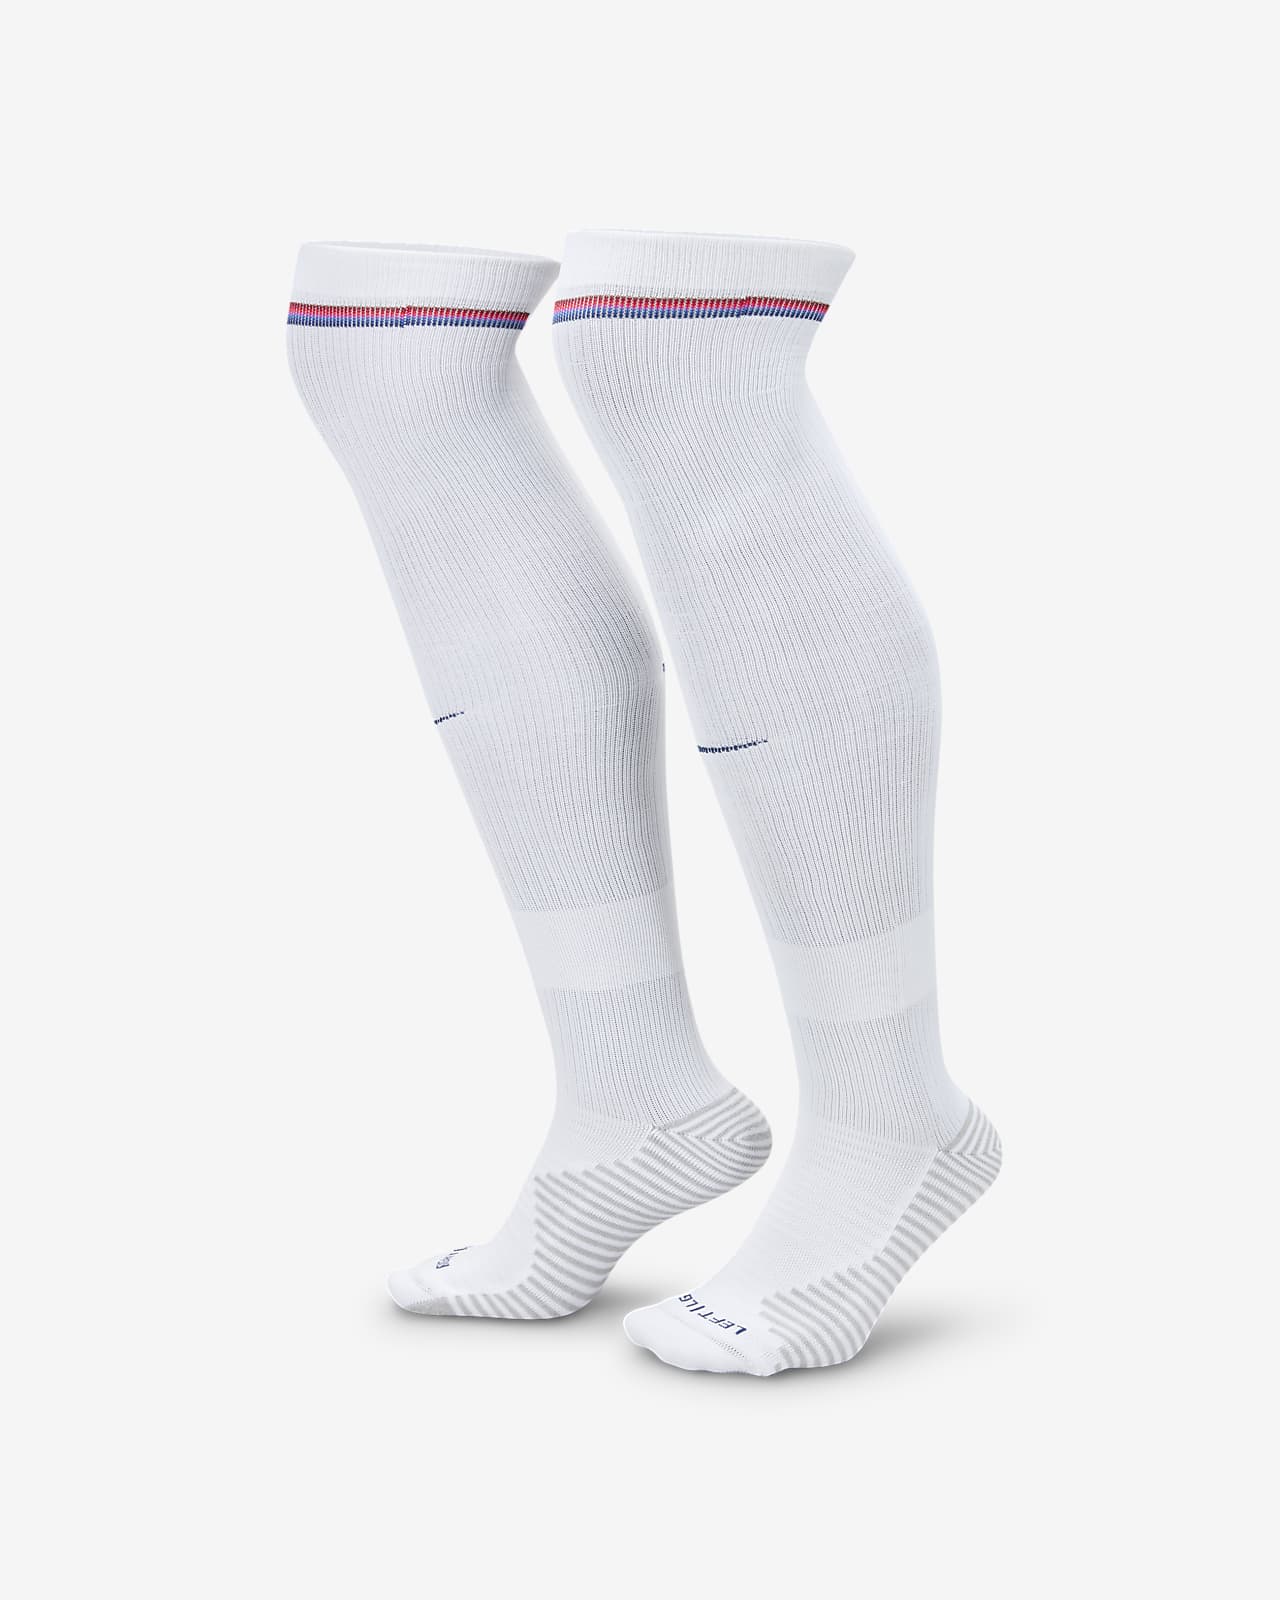 Εντός έδρας ποδοσφαιρικές κάλτσες μέχρι το γόνατο Nike Dri-FIT Αγγλία Strike